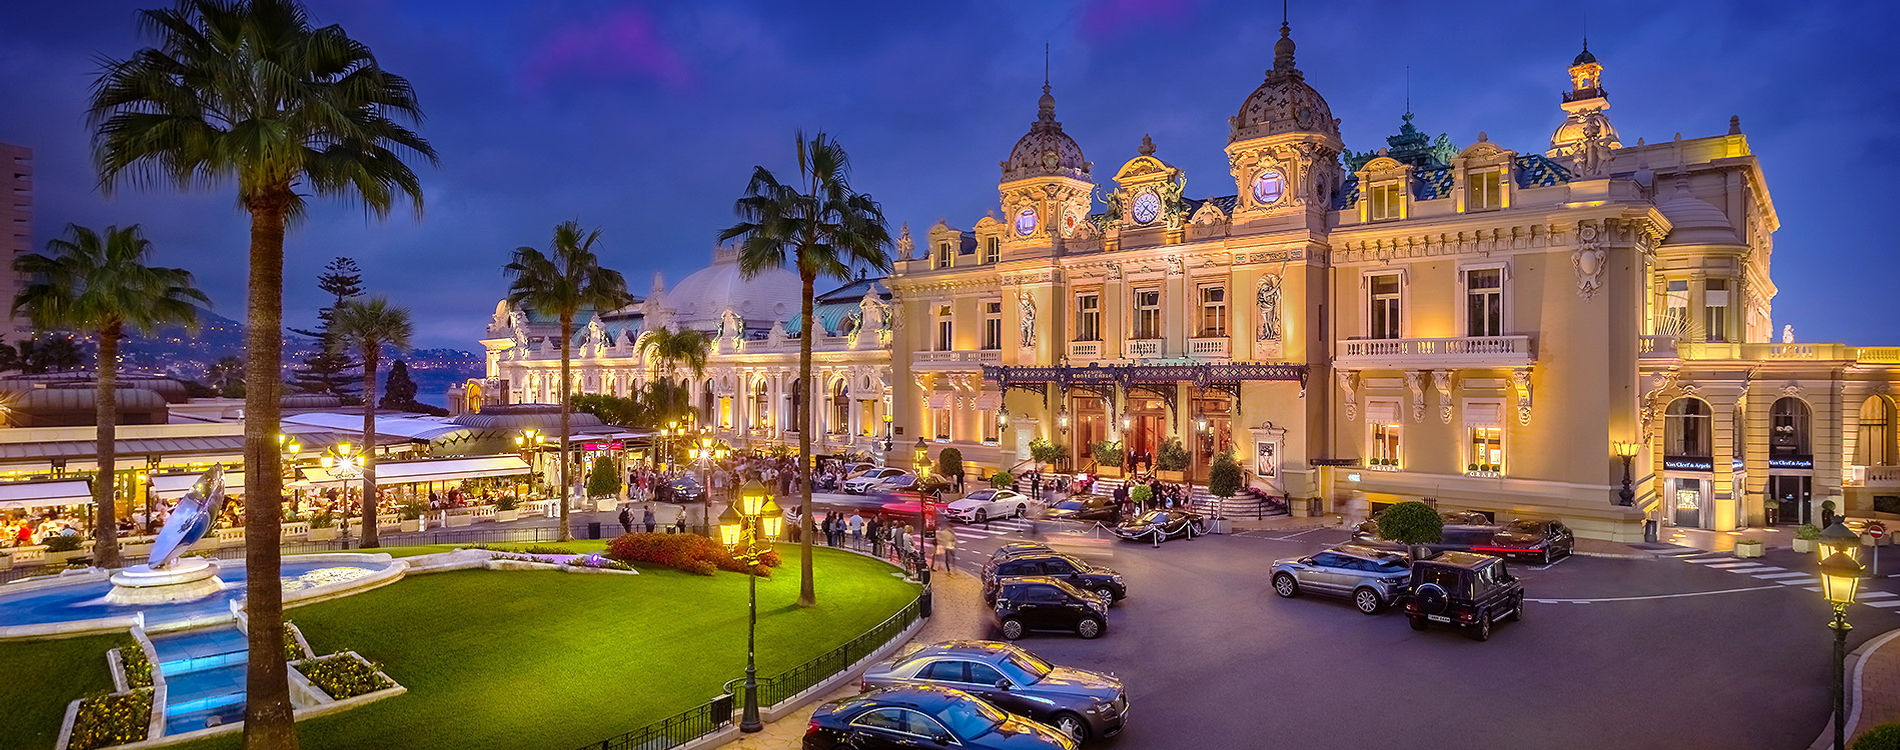 Monte Carlo Casino, Monaco 